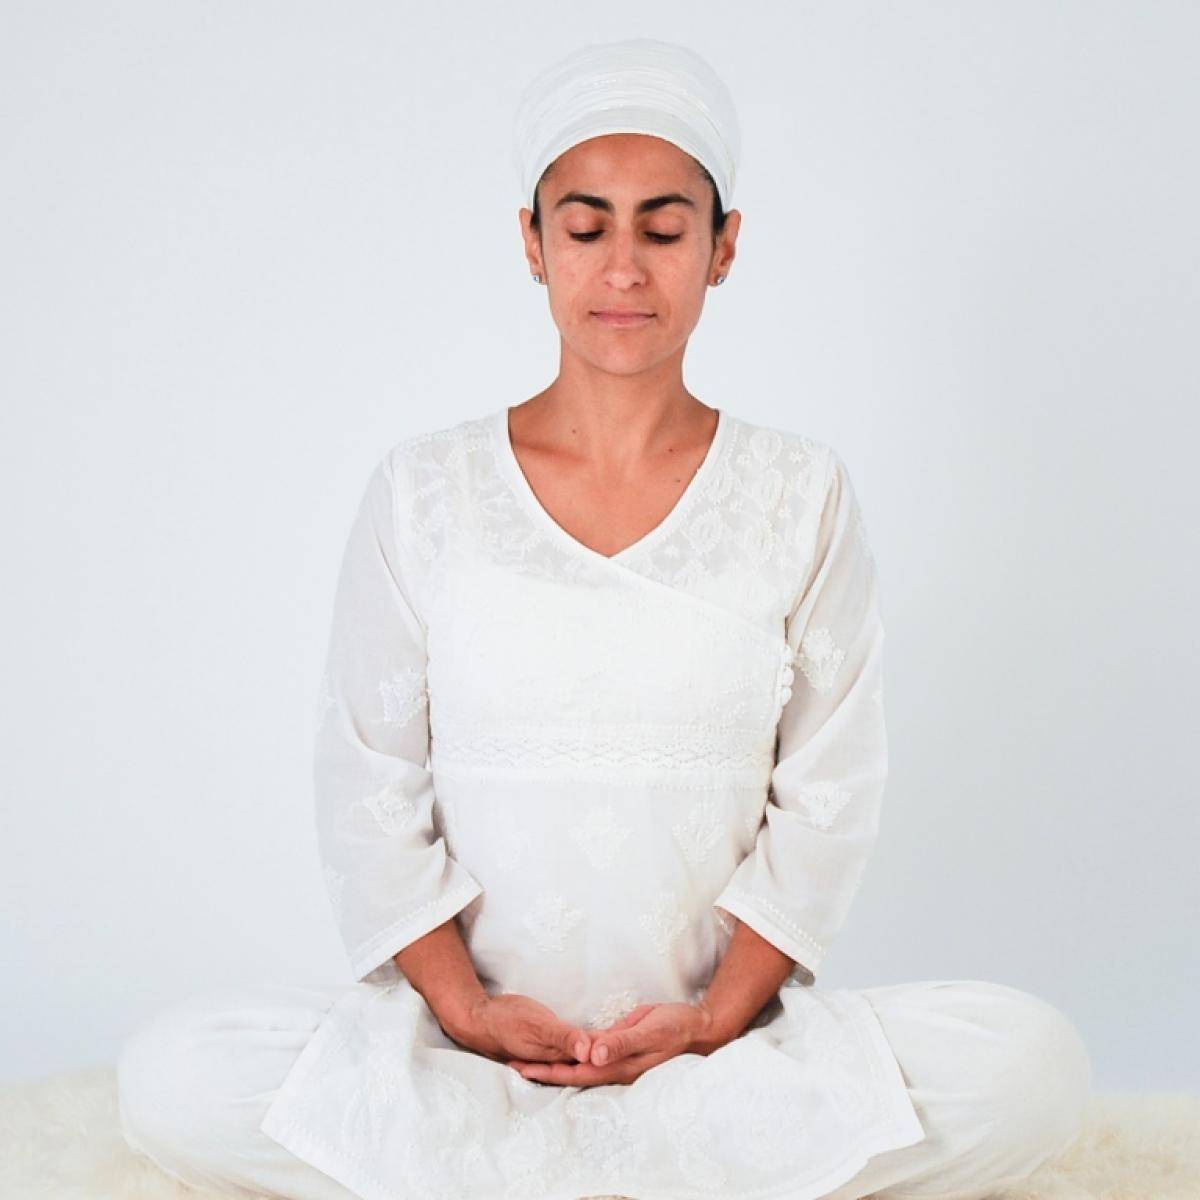 40 дней крии для здорового тела и медитации са-та-на-ма